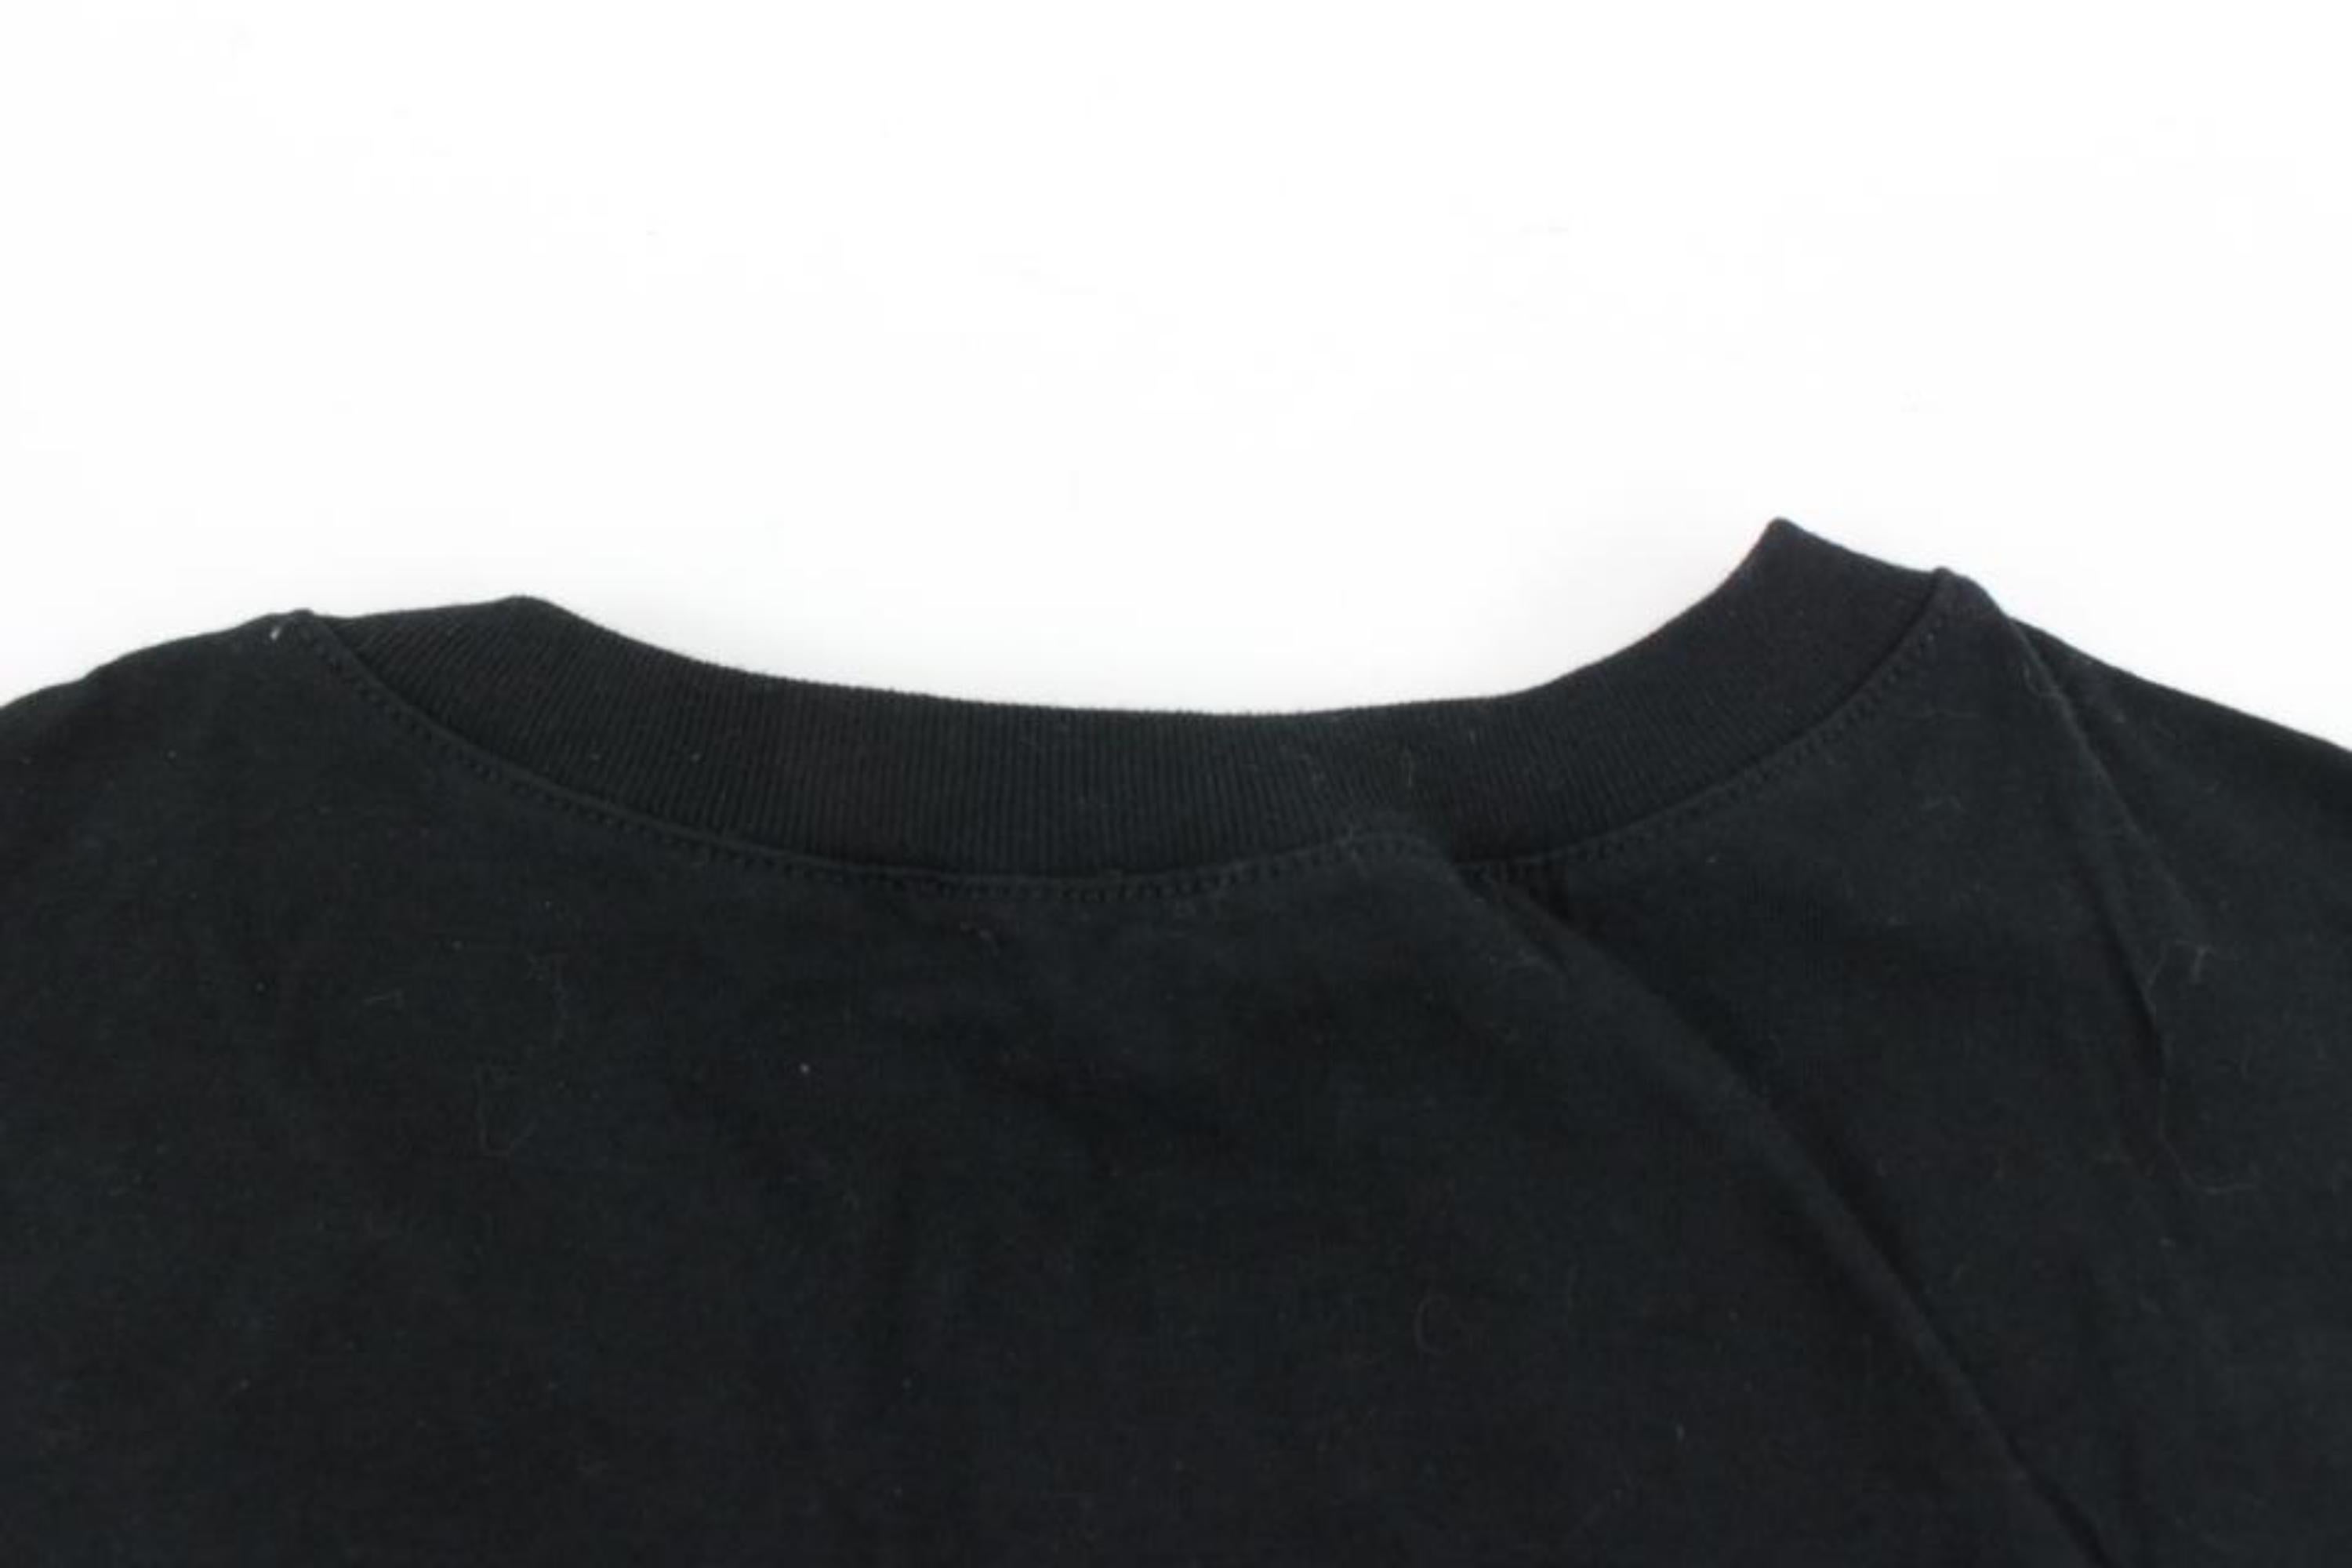 Gucci Women's XS Black x Gold Crest Logo T-Shirt Tee Shirt 120g28 1